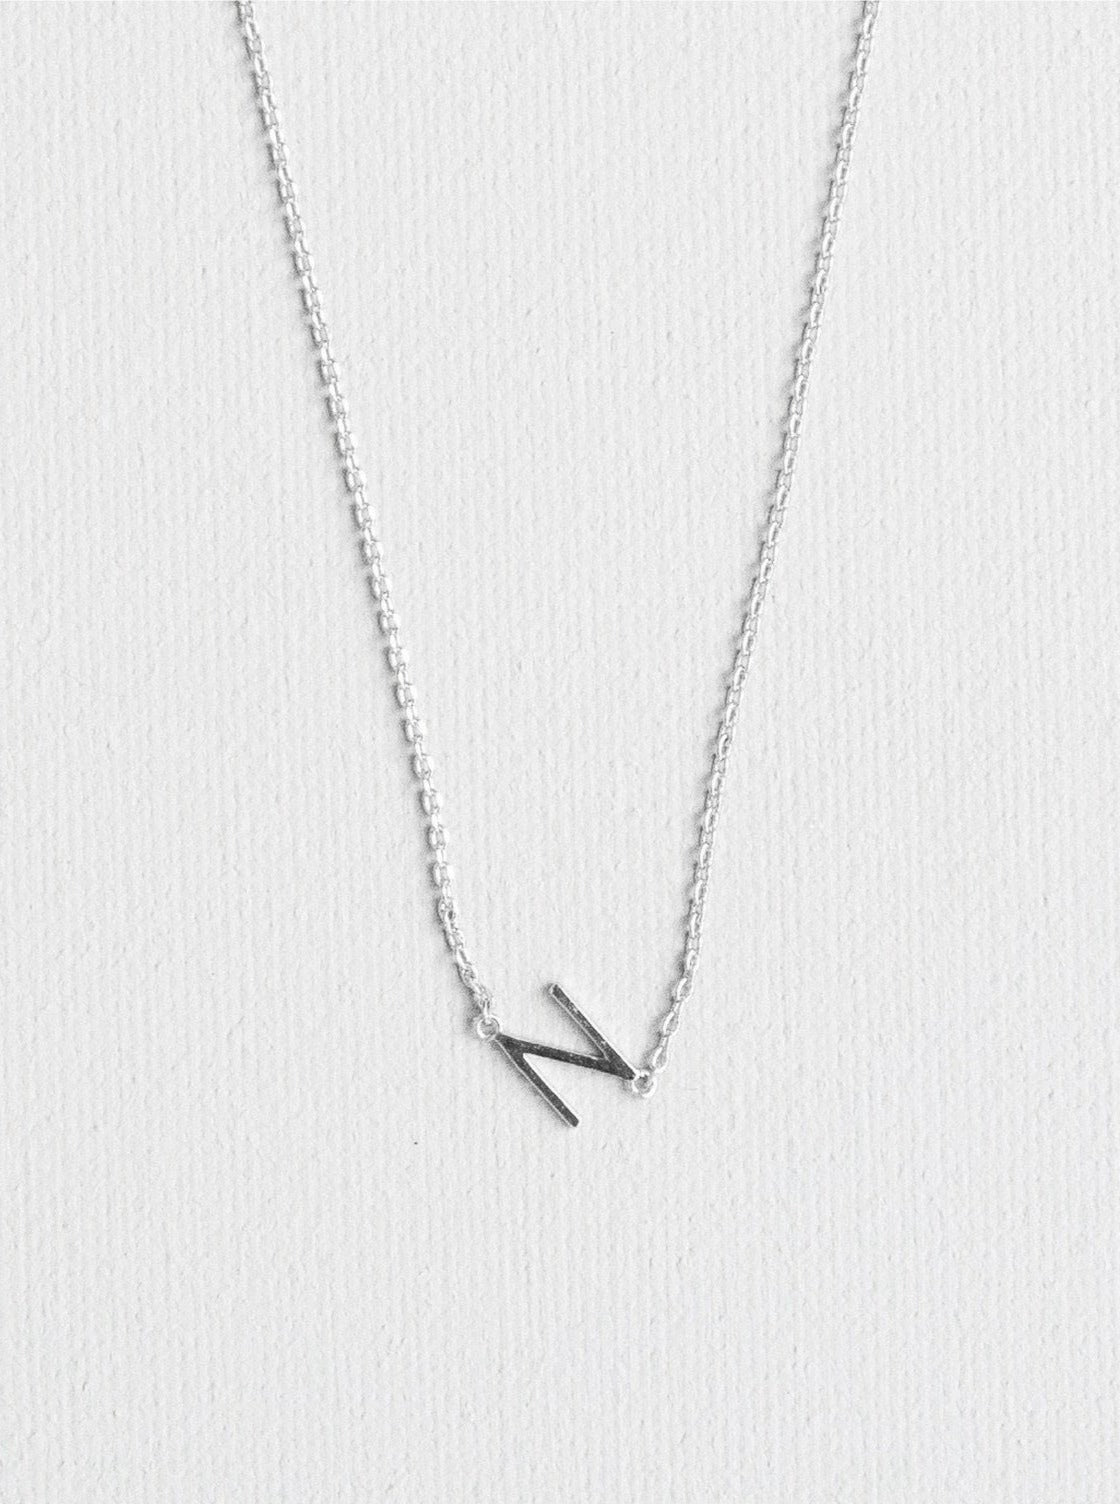 N letter necklace